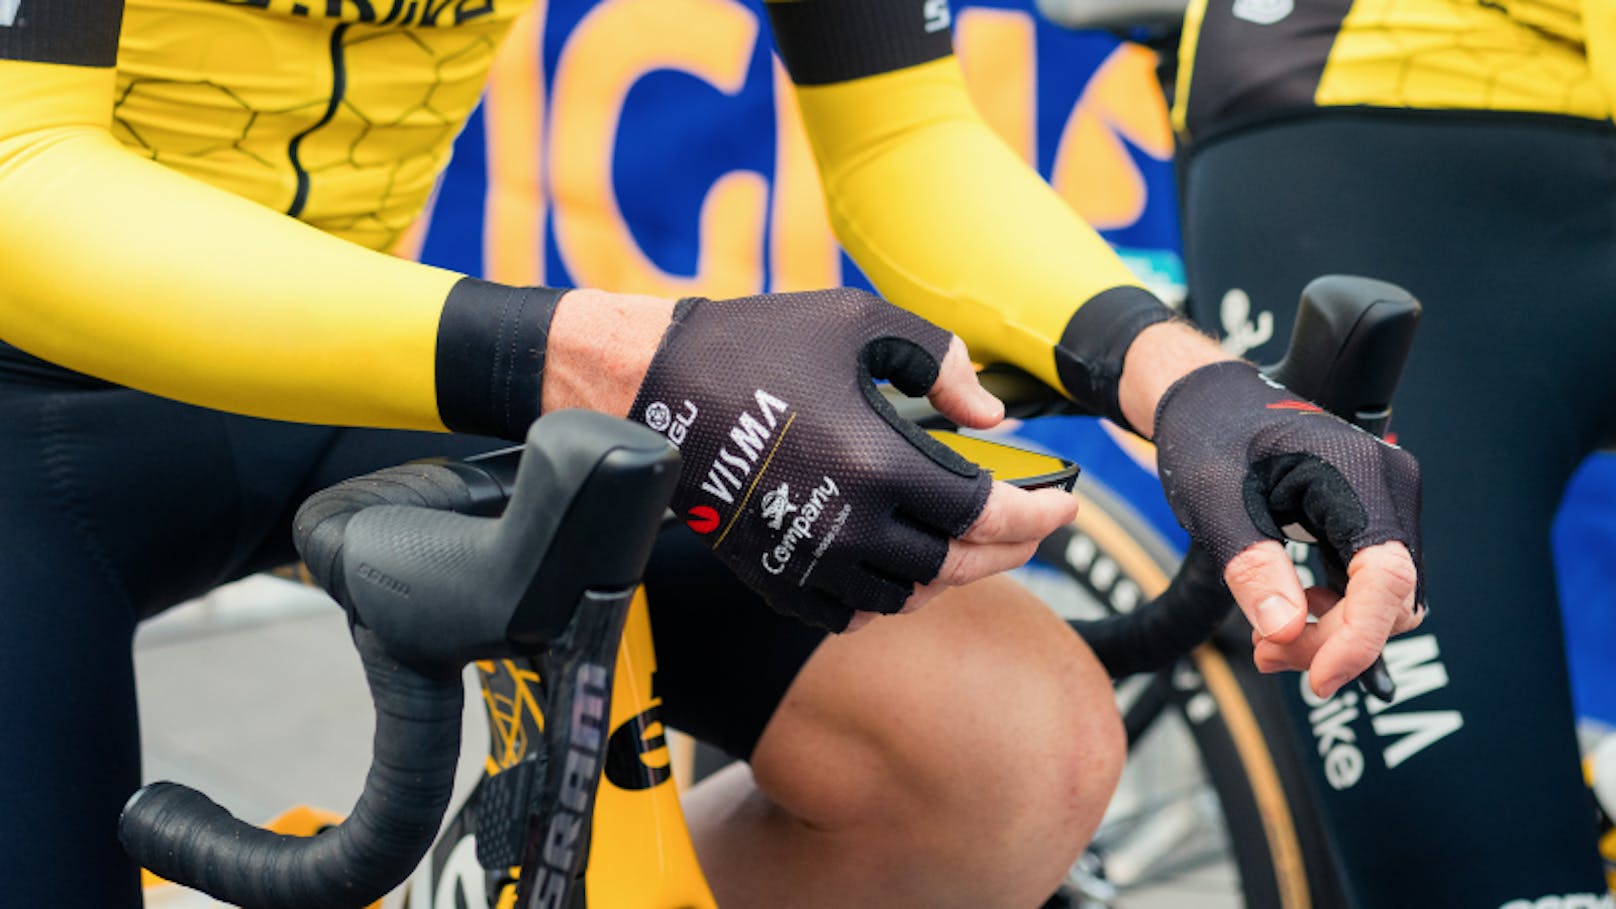 Prominente Mitfahrgelegenheit bei Tour de France – Lease a bike verlost zwölf Werbeflächen.